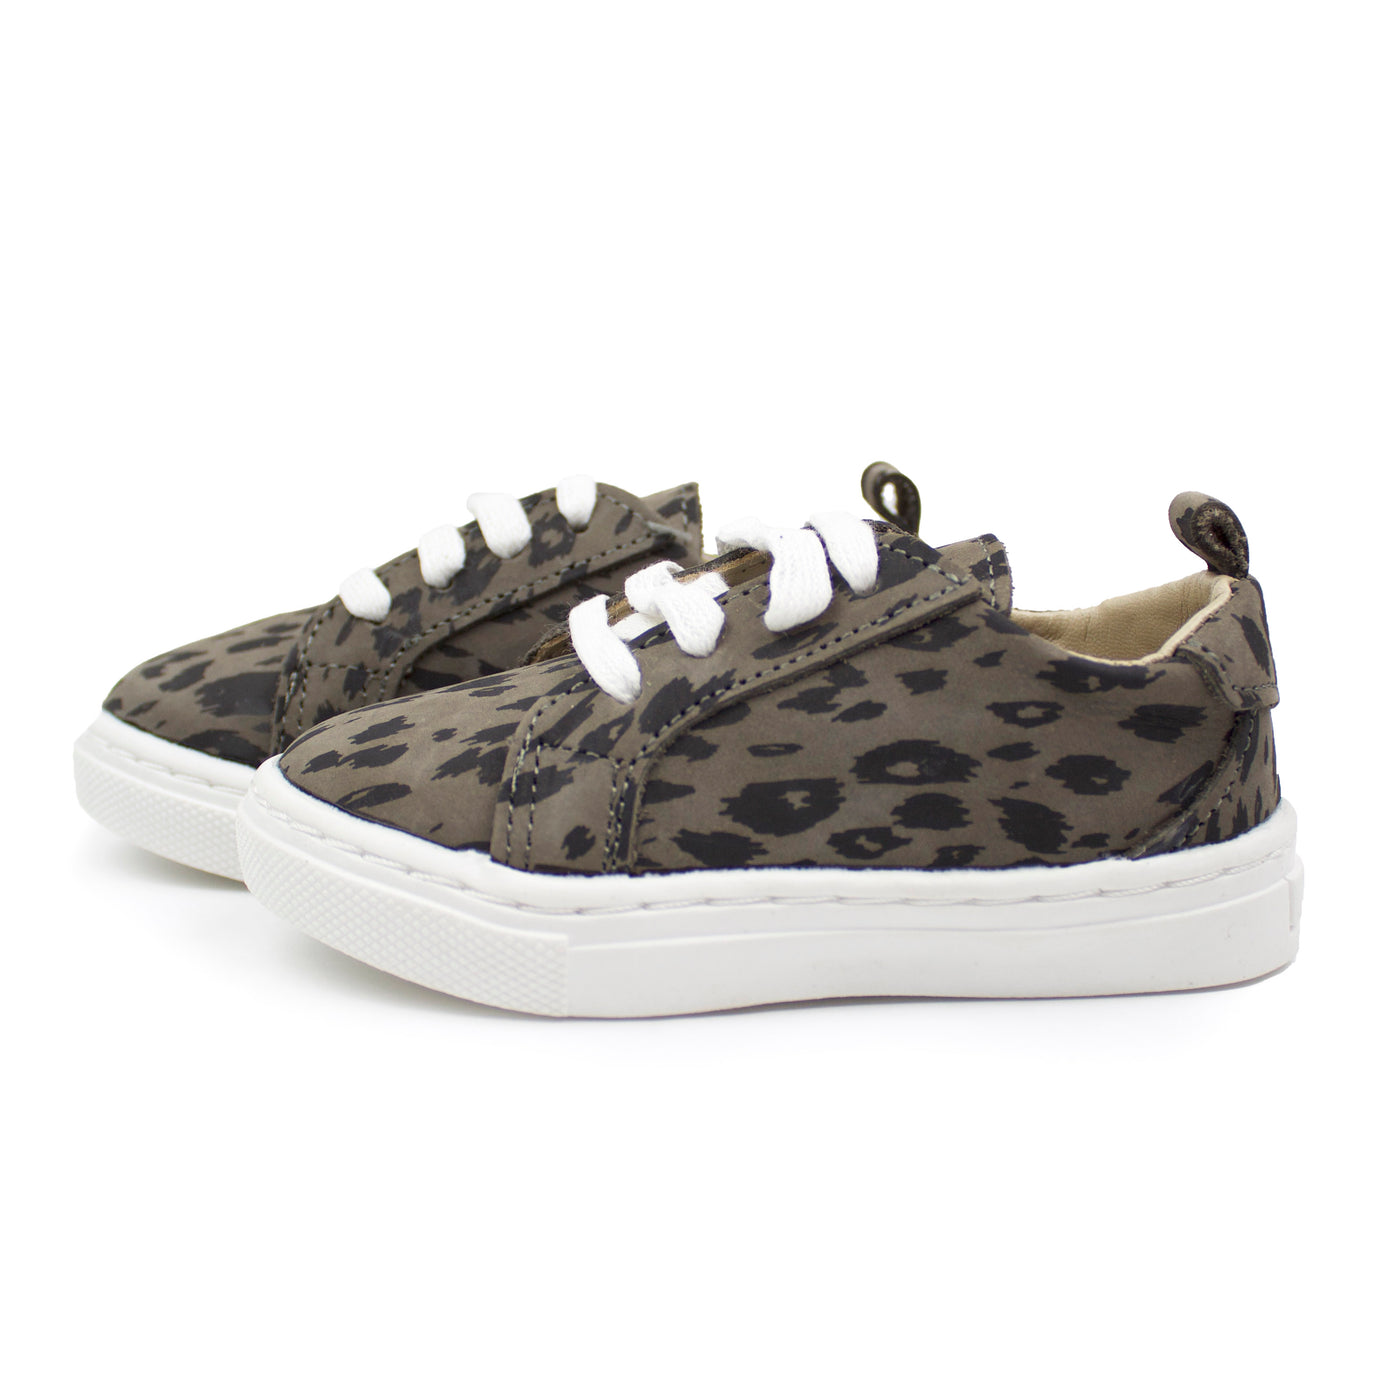 Grey Leopard - Low Top Sneakers